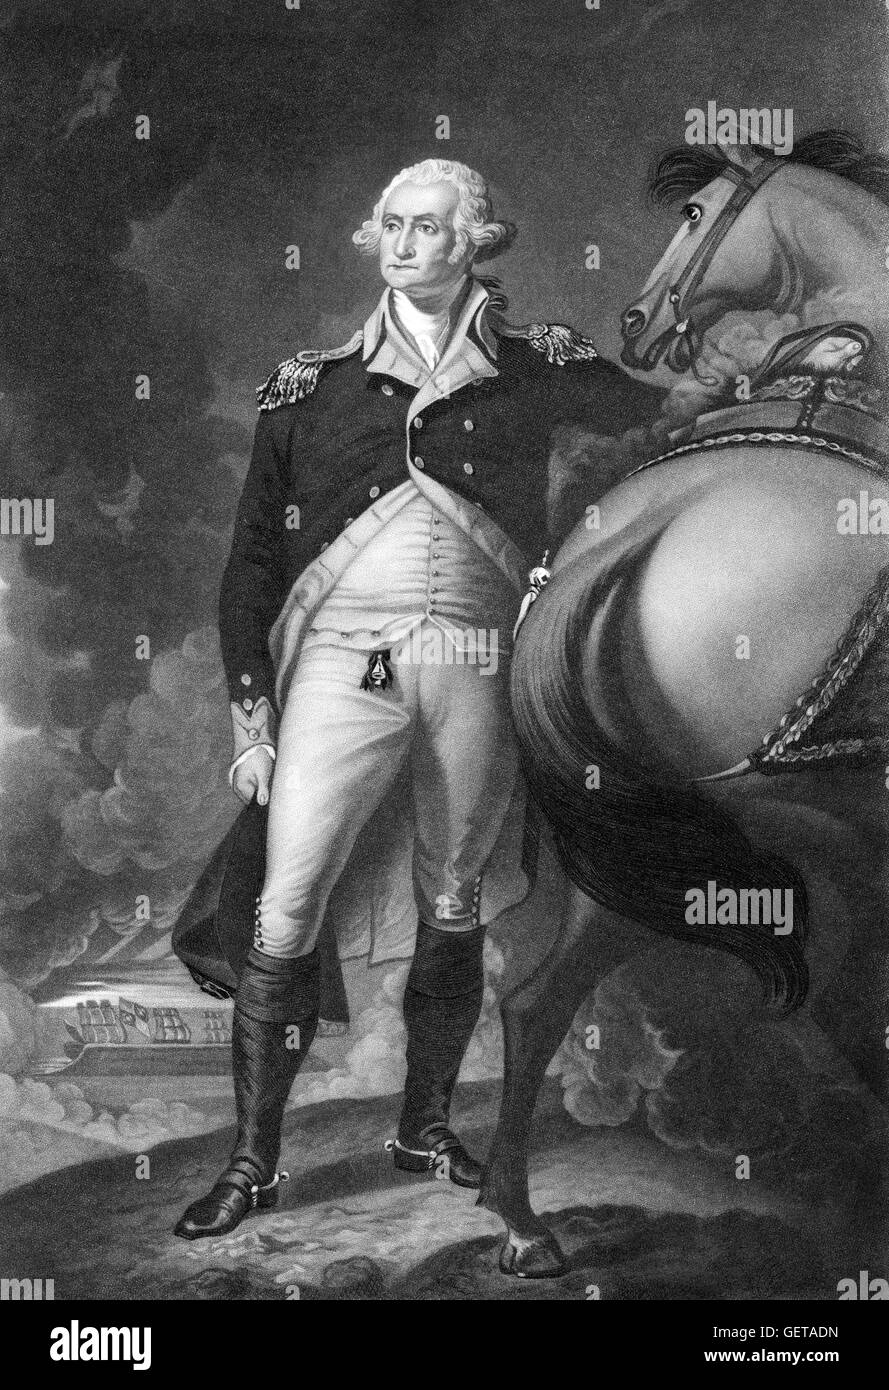 George Washington (1732 – 1799), erster Präsident der Vereinigten Staaten (1789 – 97), und der Oberbefehlshaber der Kontinentalarmee während des amerikanischen Unabhängigkeitskrieges. Dieses Porträt ist eine Gravur des Gemäldes von Gilbert Stuart, "Washington in Dorchester Höhen", 1806. Stockfoto